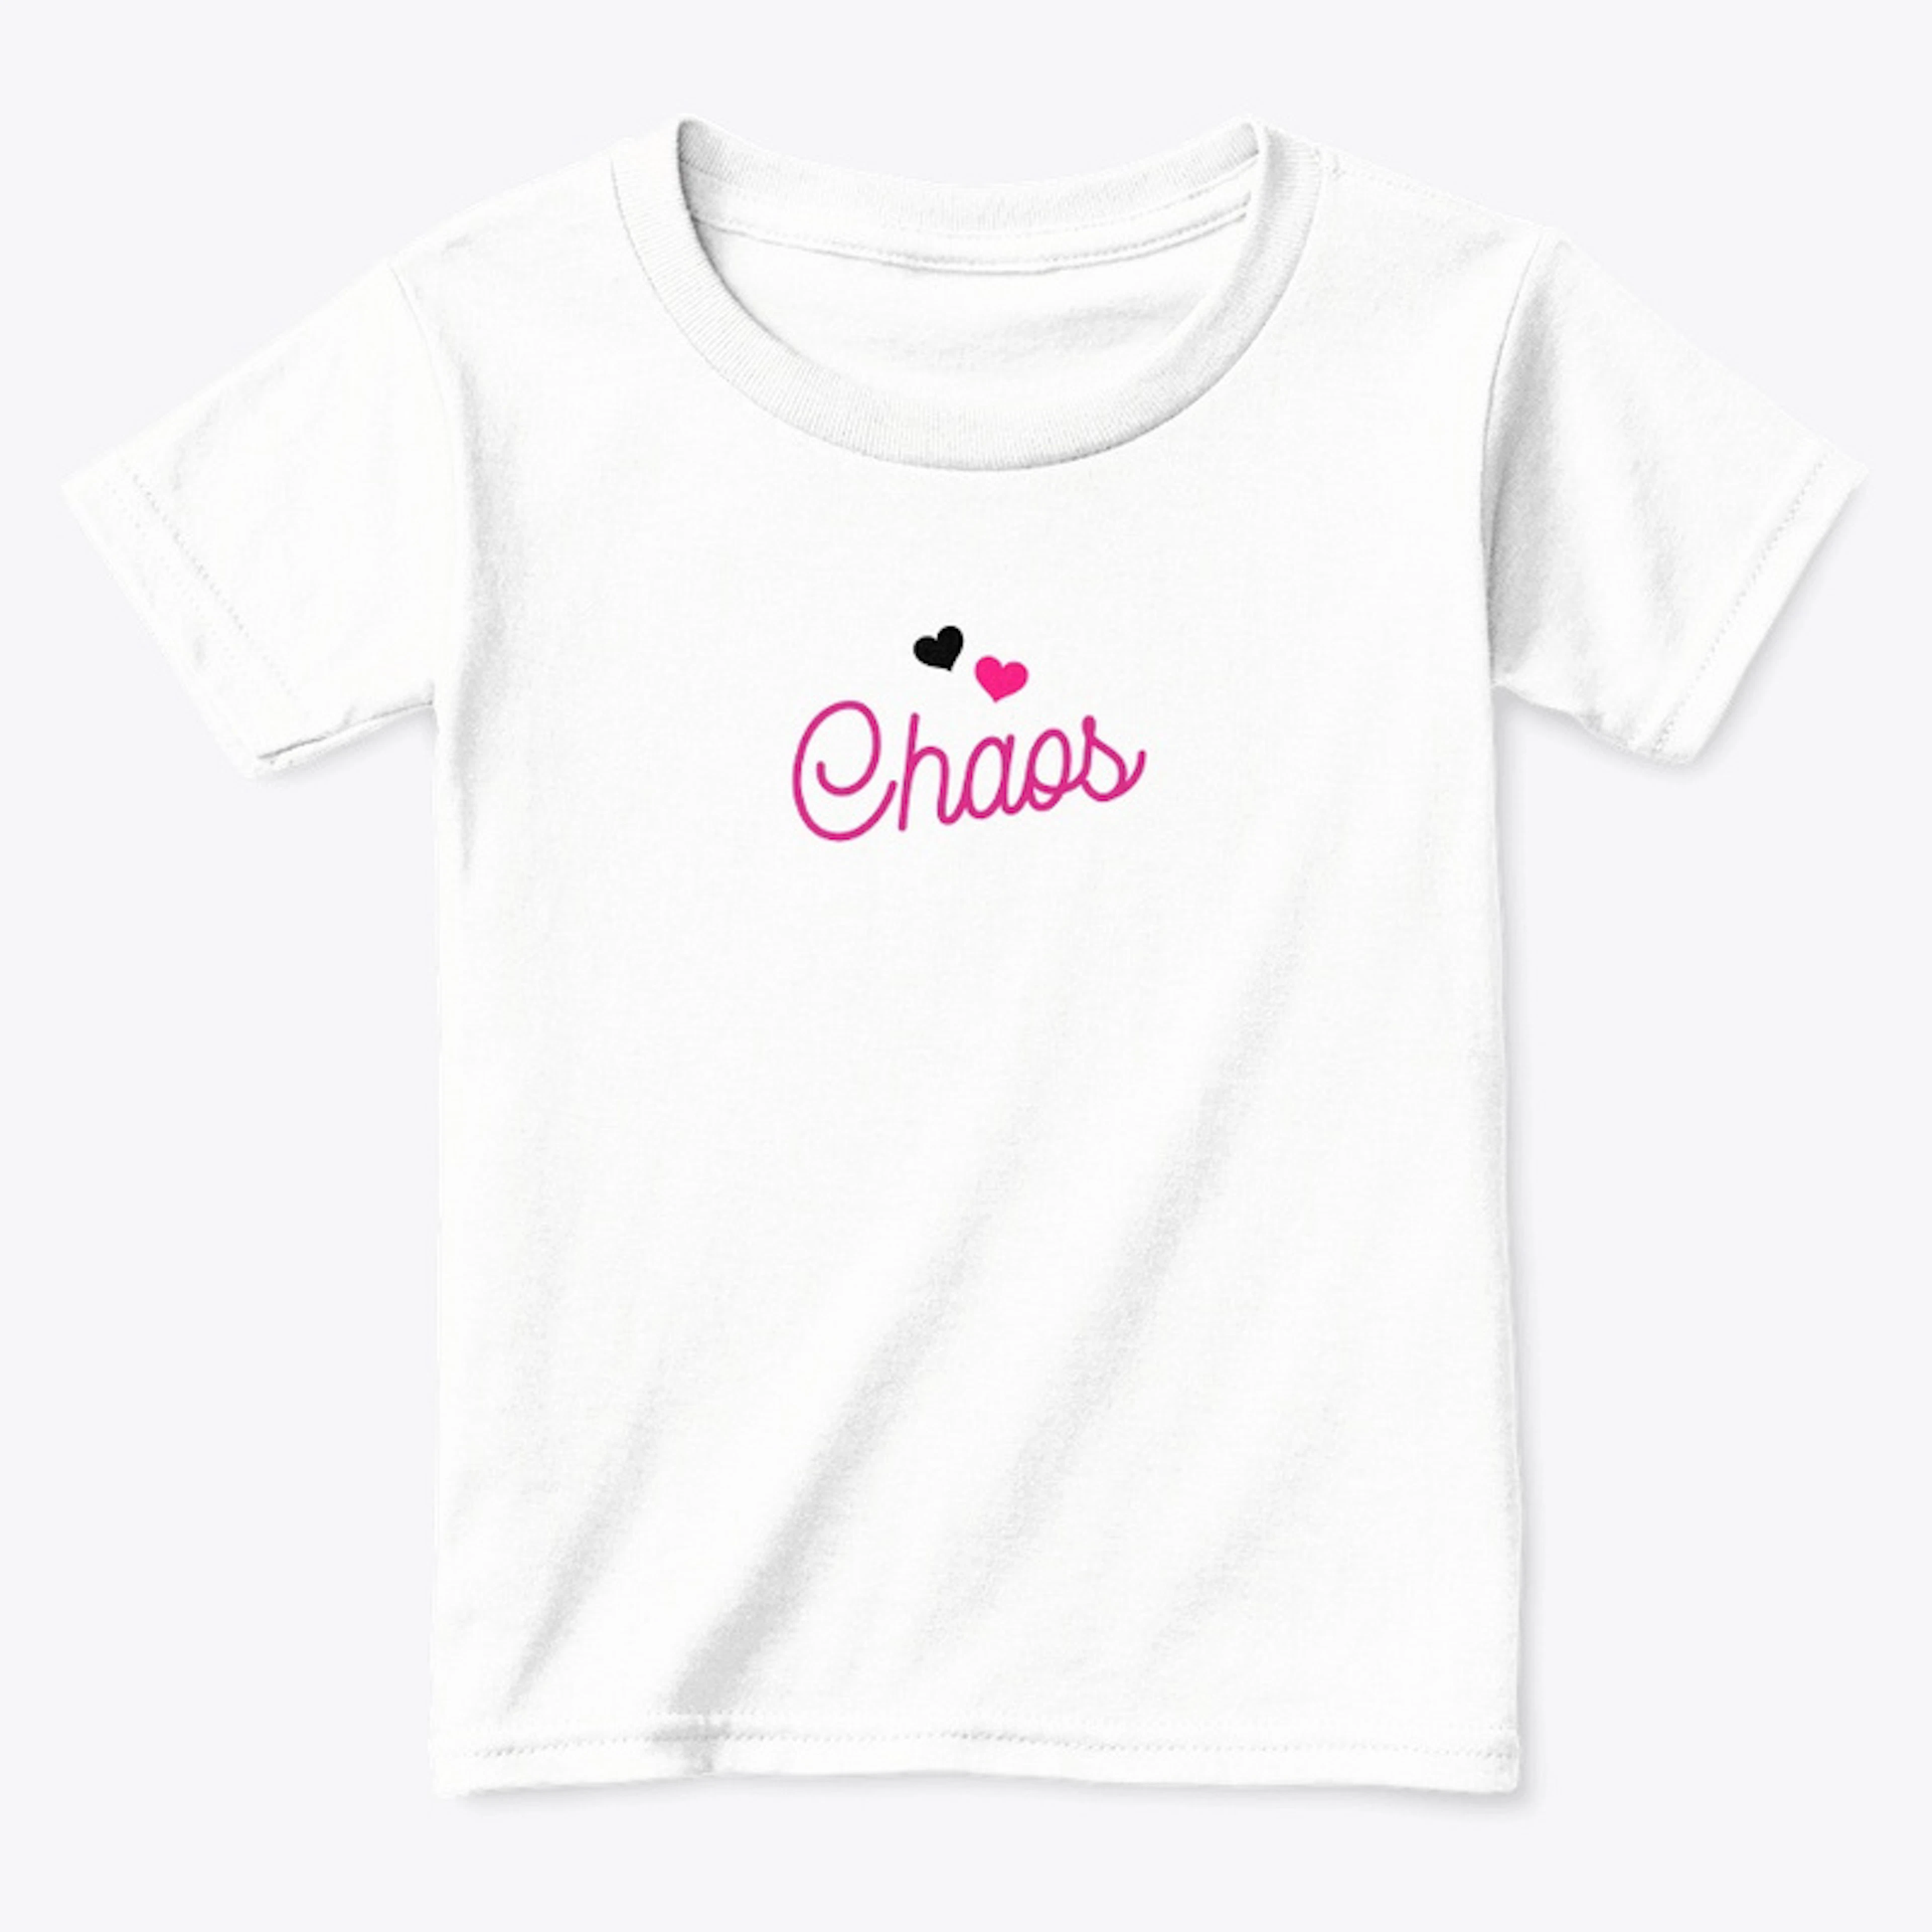 Chaos shirt for girl